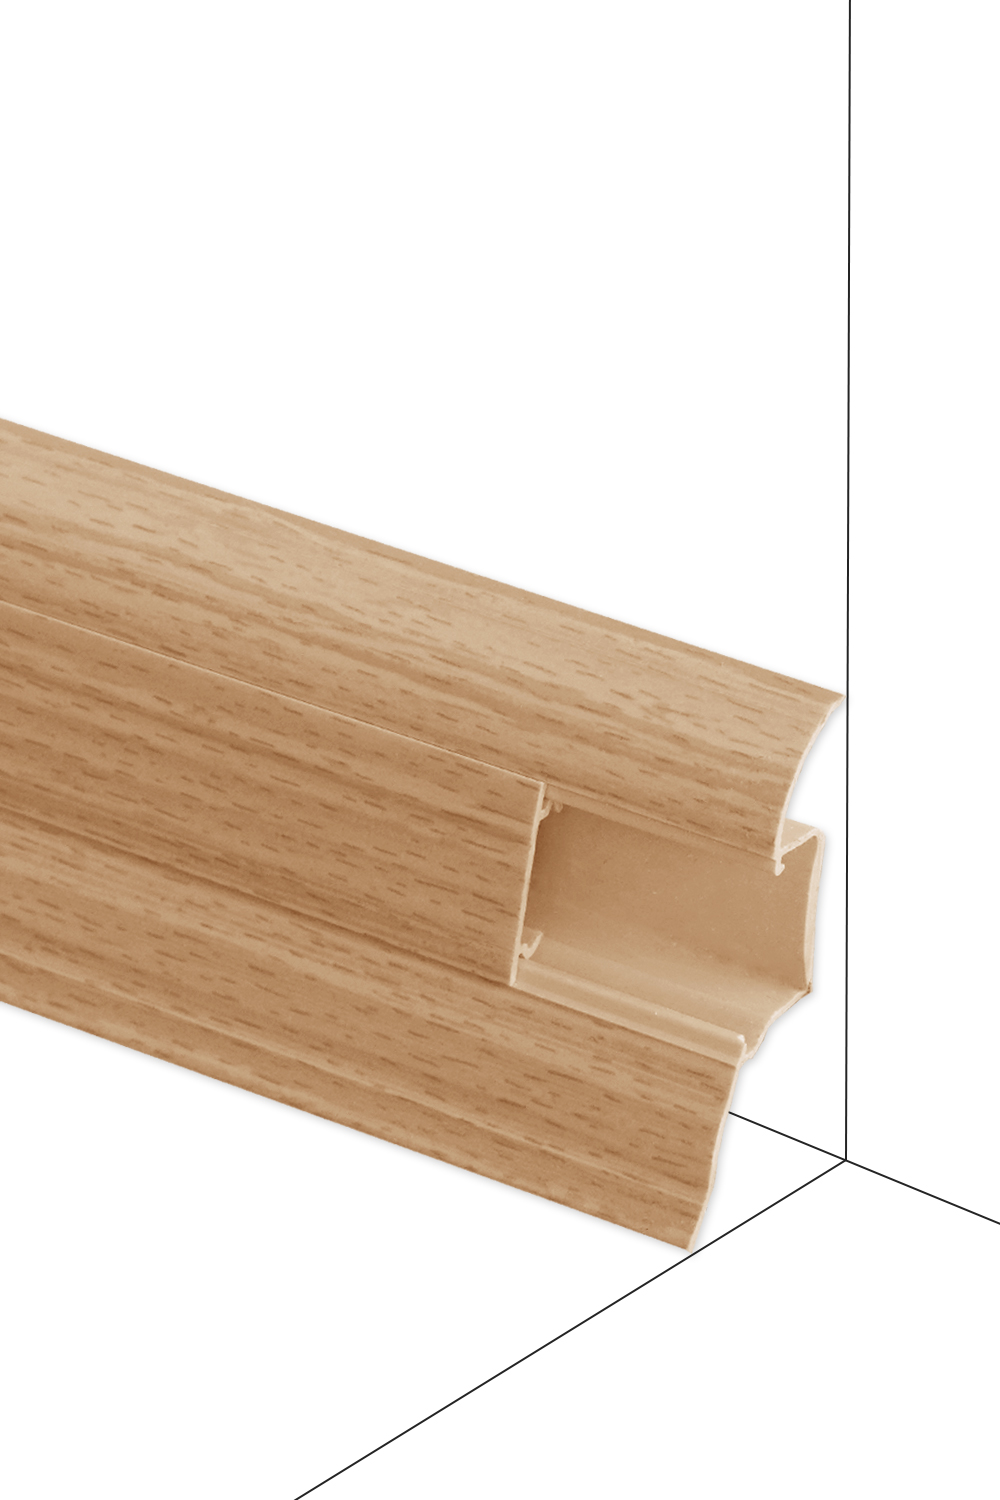 Podlahová lišta Döllken W169 - Buk Corona - délka 250 cm Ukončení P 